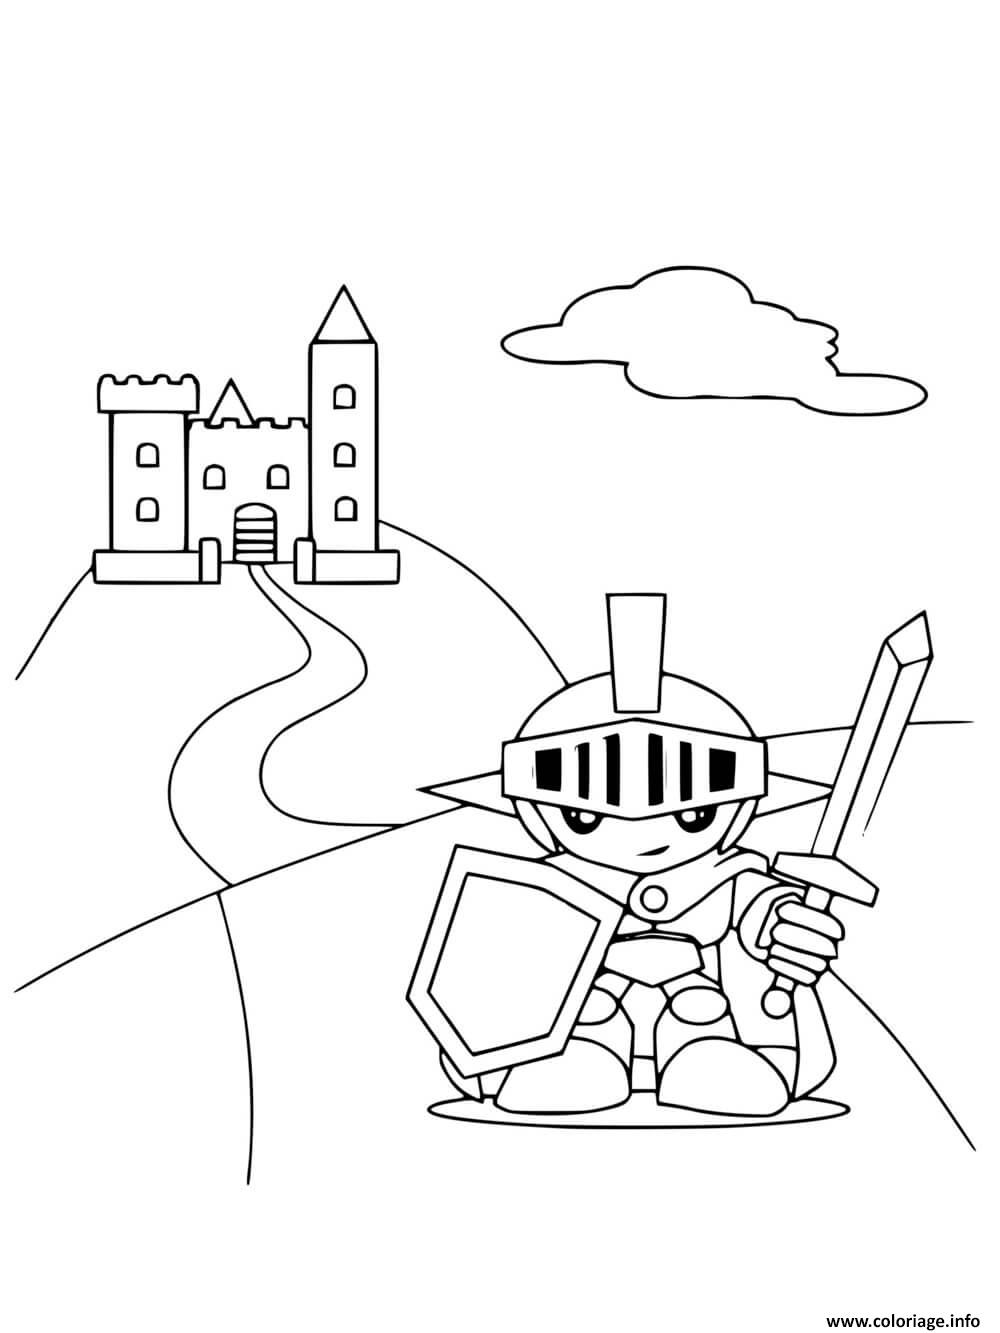 Dessin chevalier pret pour defendre le chateau Coloriage Gratuit à Imprimer